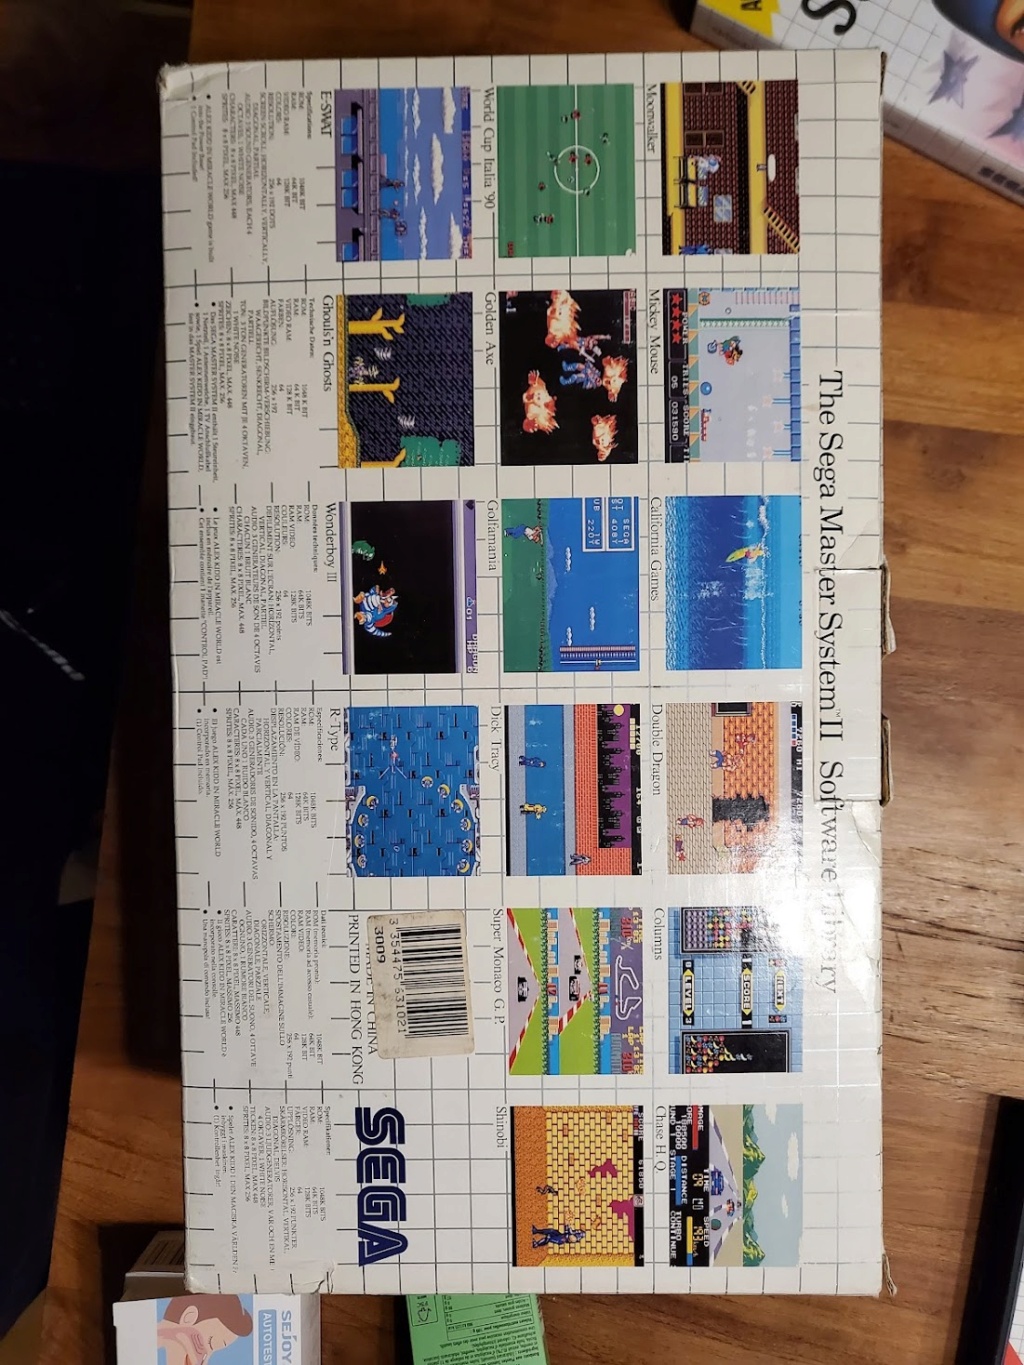 [EST] Partie de ma Collec MS / Pack Master System 2 en boite complète de chez complète + 50 jeux complets 310